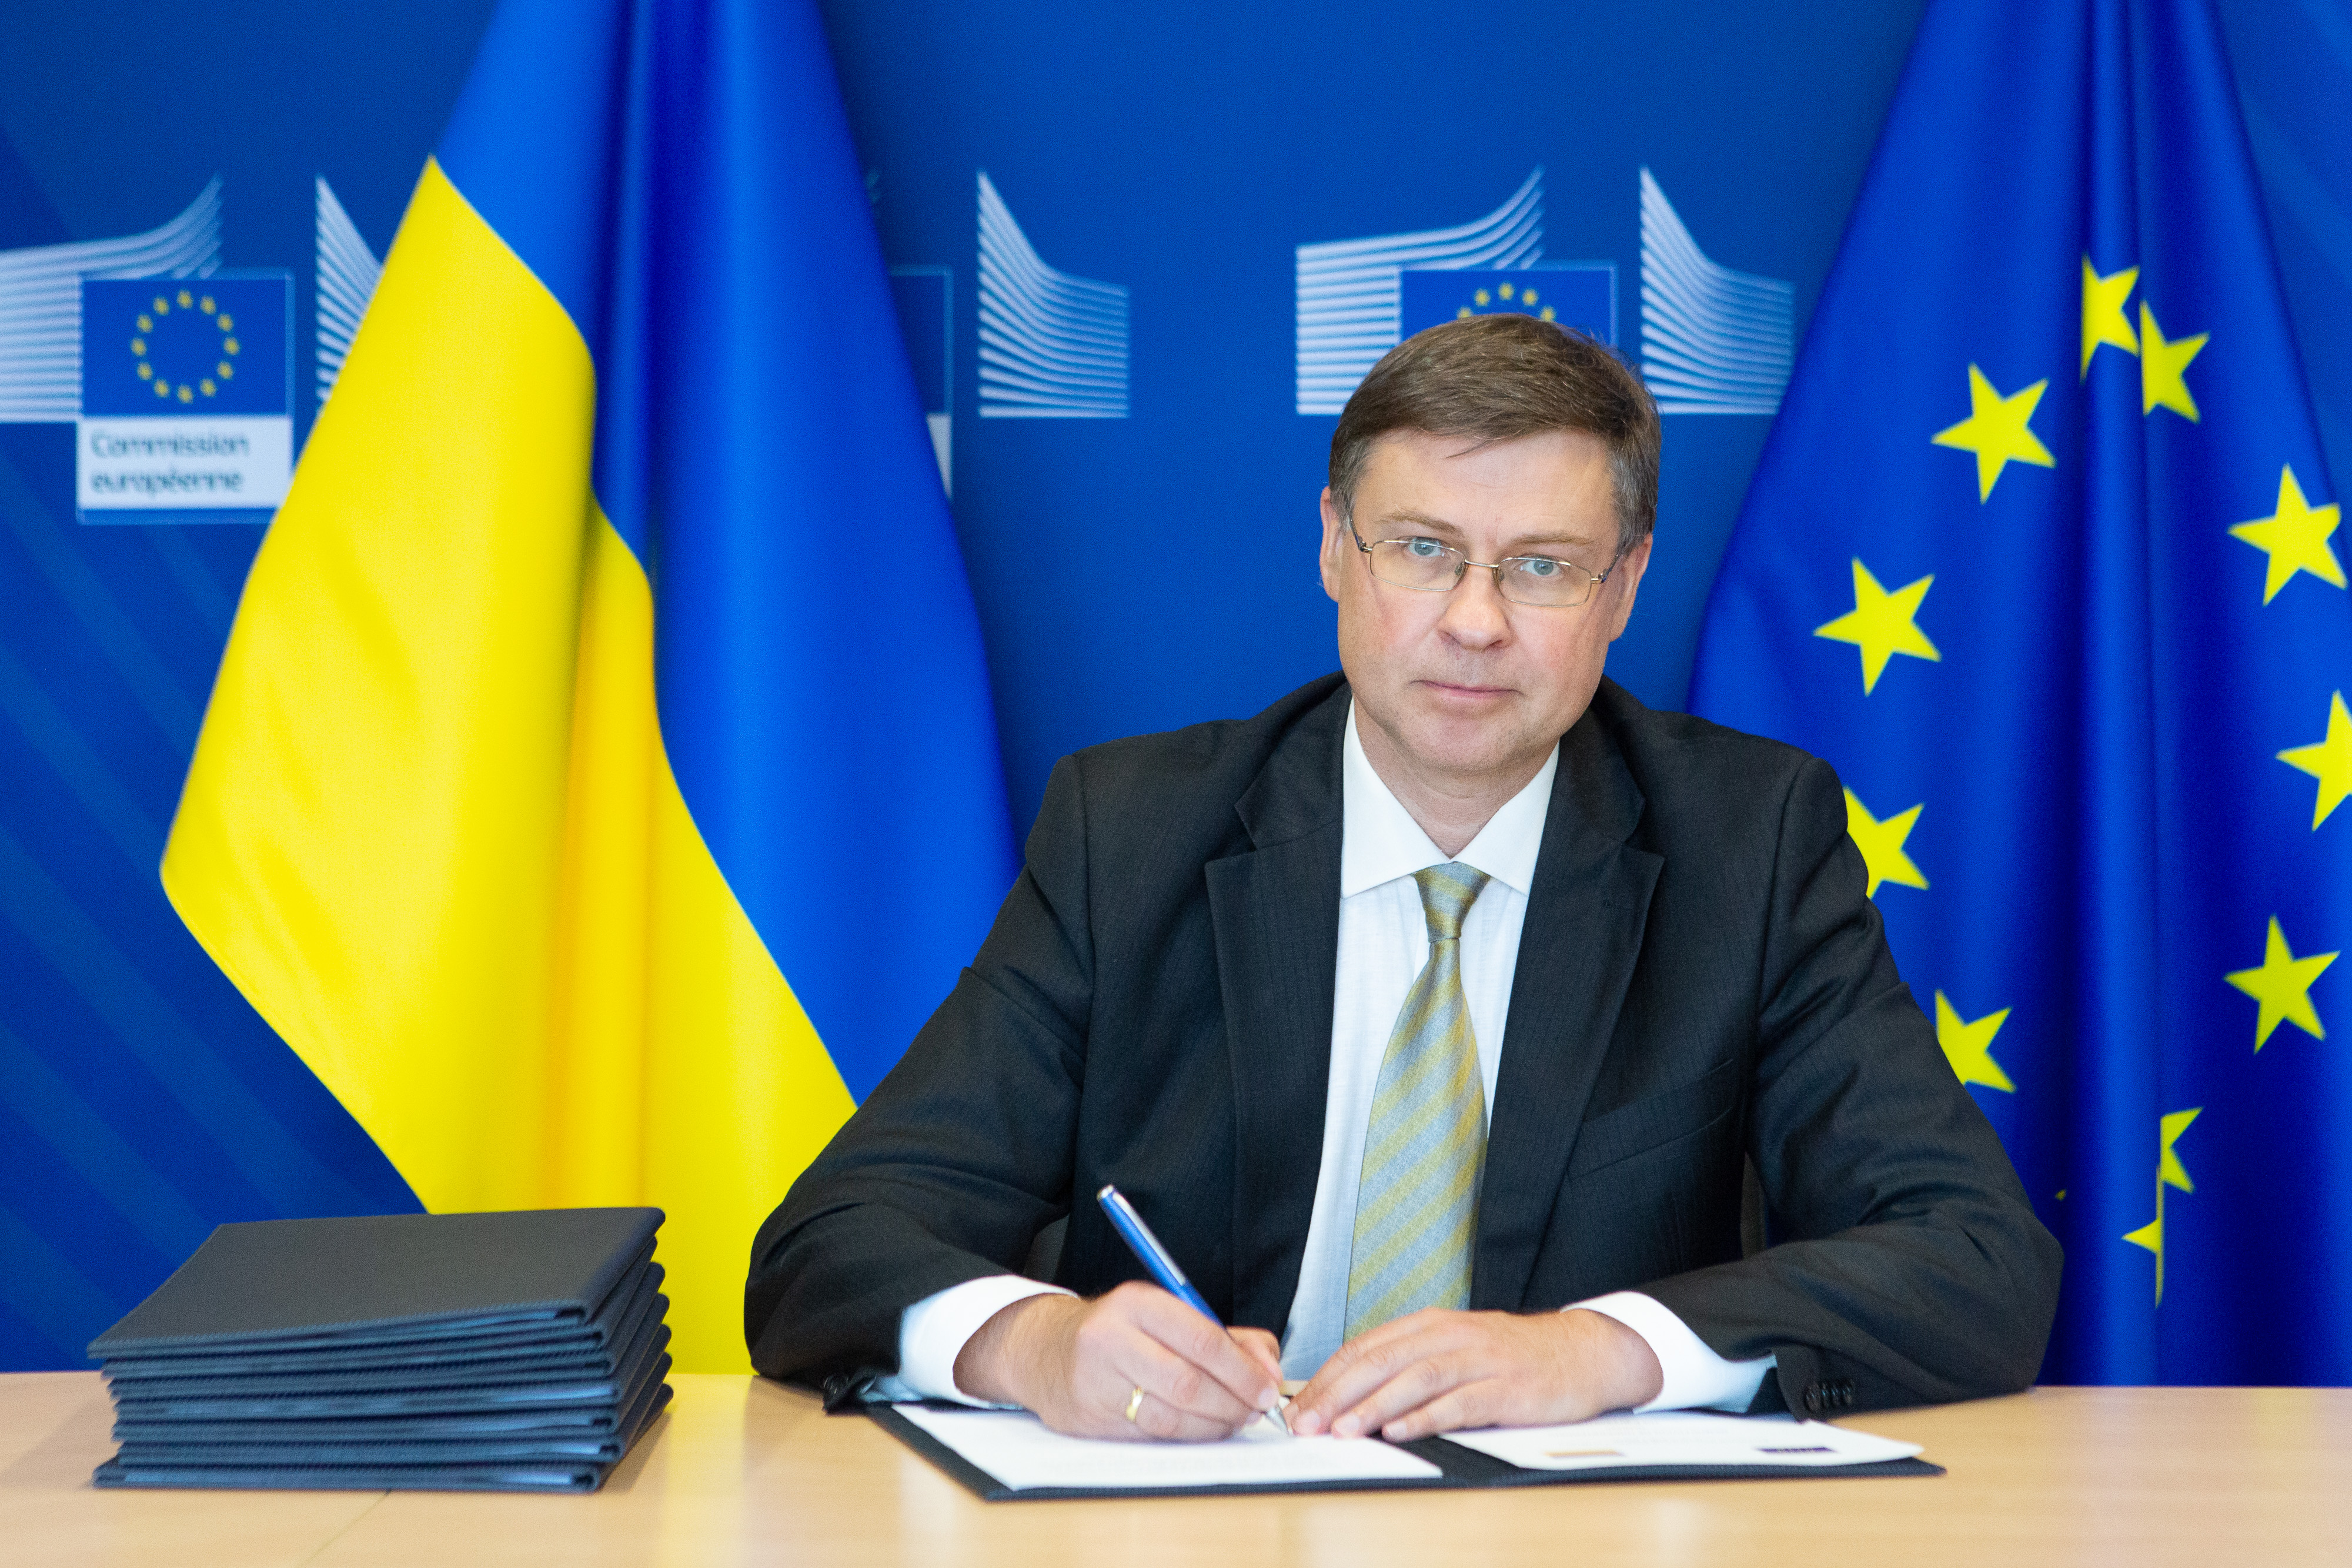 Єврокомісія підписала меморандум про надання Україні траншу на €1 мільярд